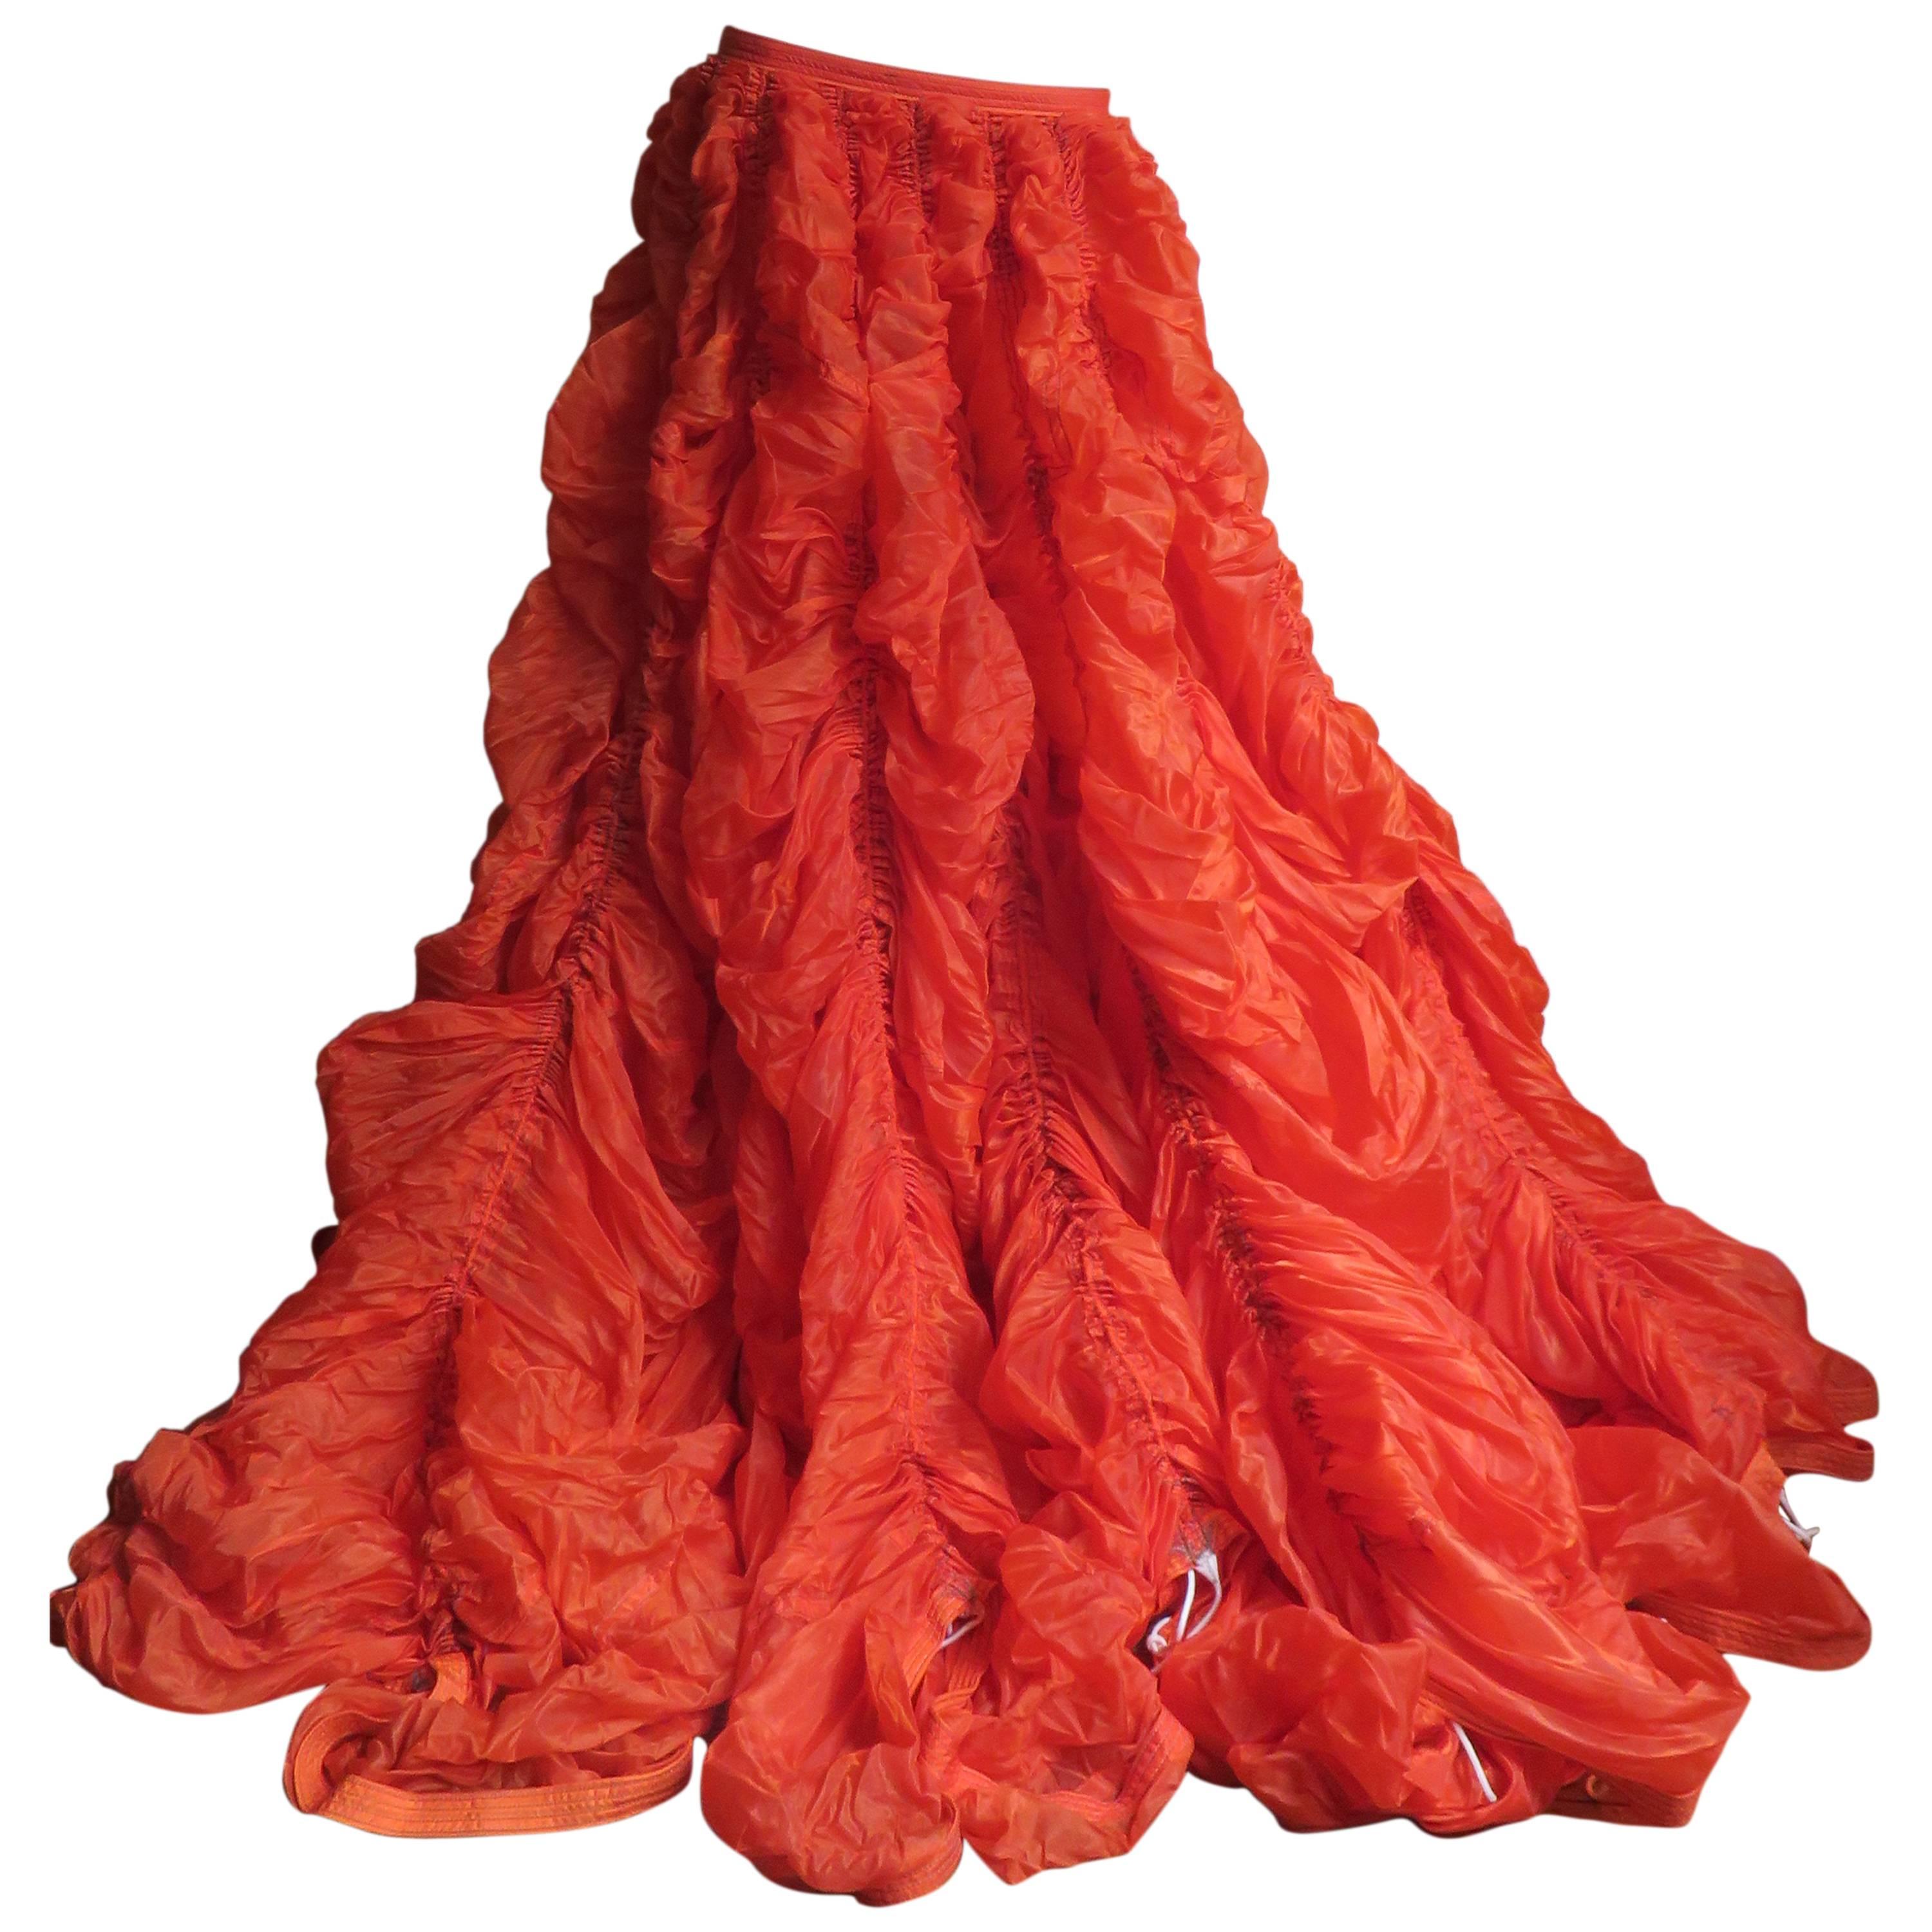 Rare Iconic Museum Exhibited 1970's Norma Kamaili Parachute Skirt